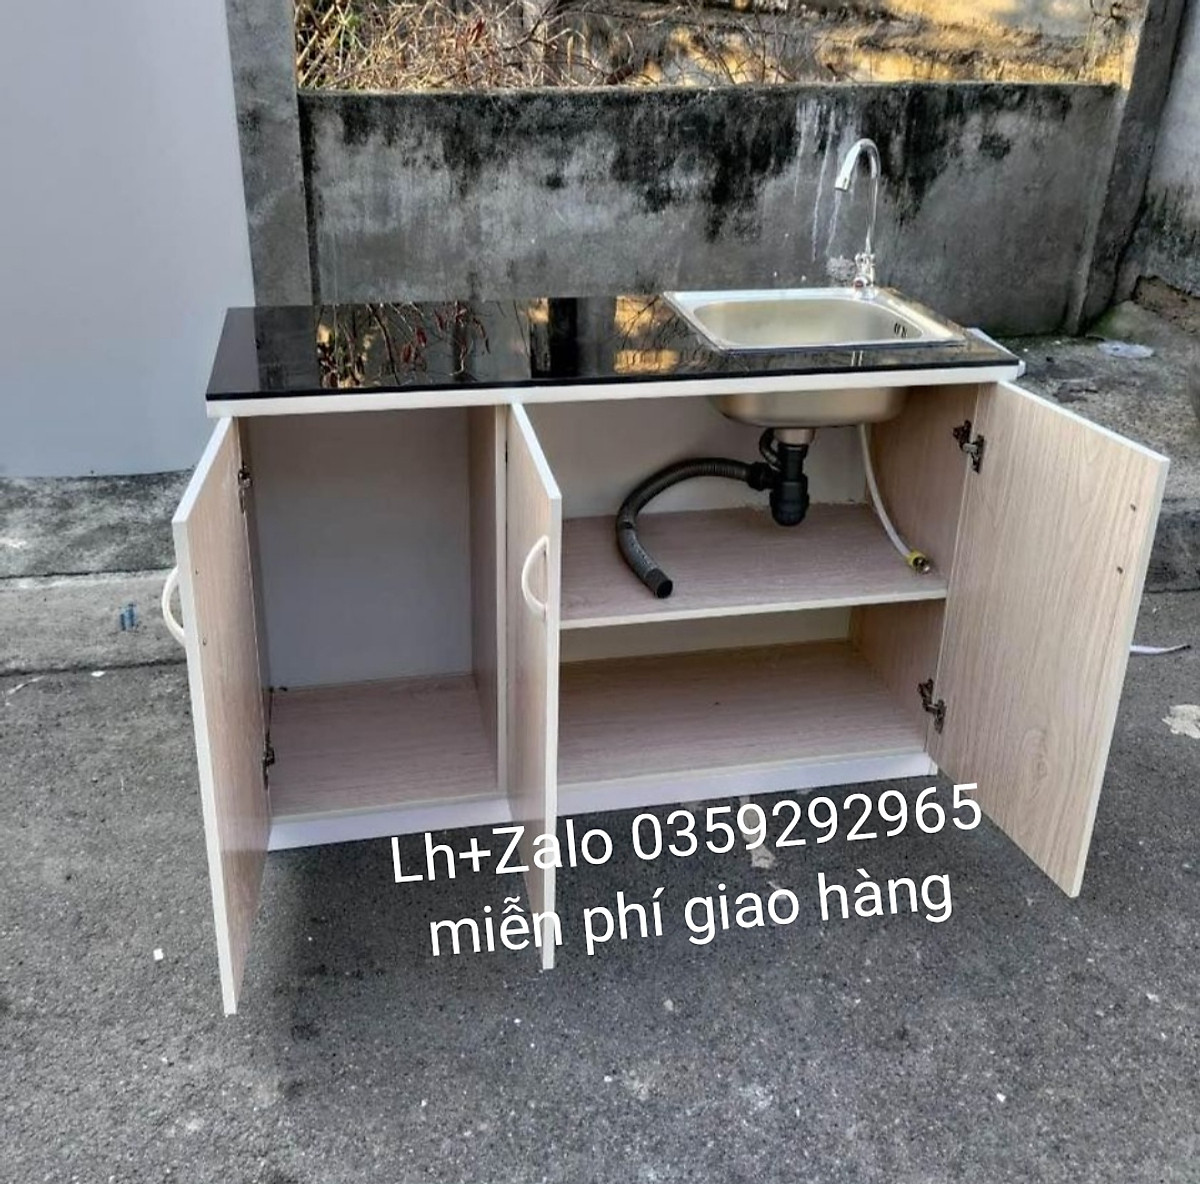 Tủ bếp nhựa mini đài loan là lựa chọn hoàn hảo cho những căn hộ nhỏ. Sản phẩm chất lượng từ Đài Loan, kích thước vừa đủ phù hợp với không gian bếp nhỏ. Thiết kế thông minh, tiện lợi và dễ dàng vệ sinh. Hãy xem hình ảnh để cảm nhận sự tiện ích của sản phẩm này.